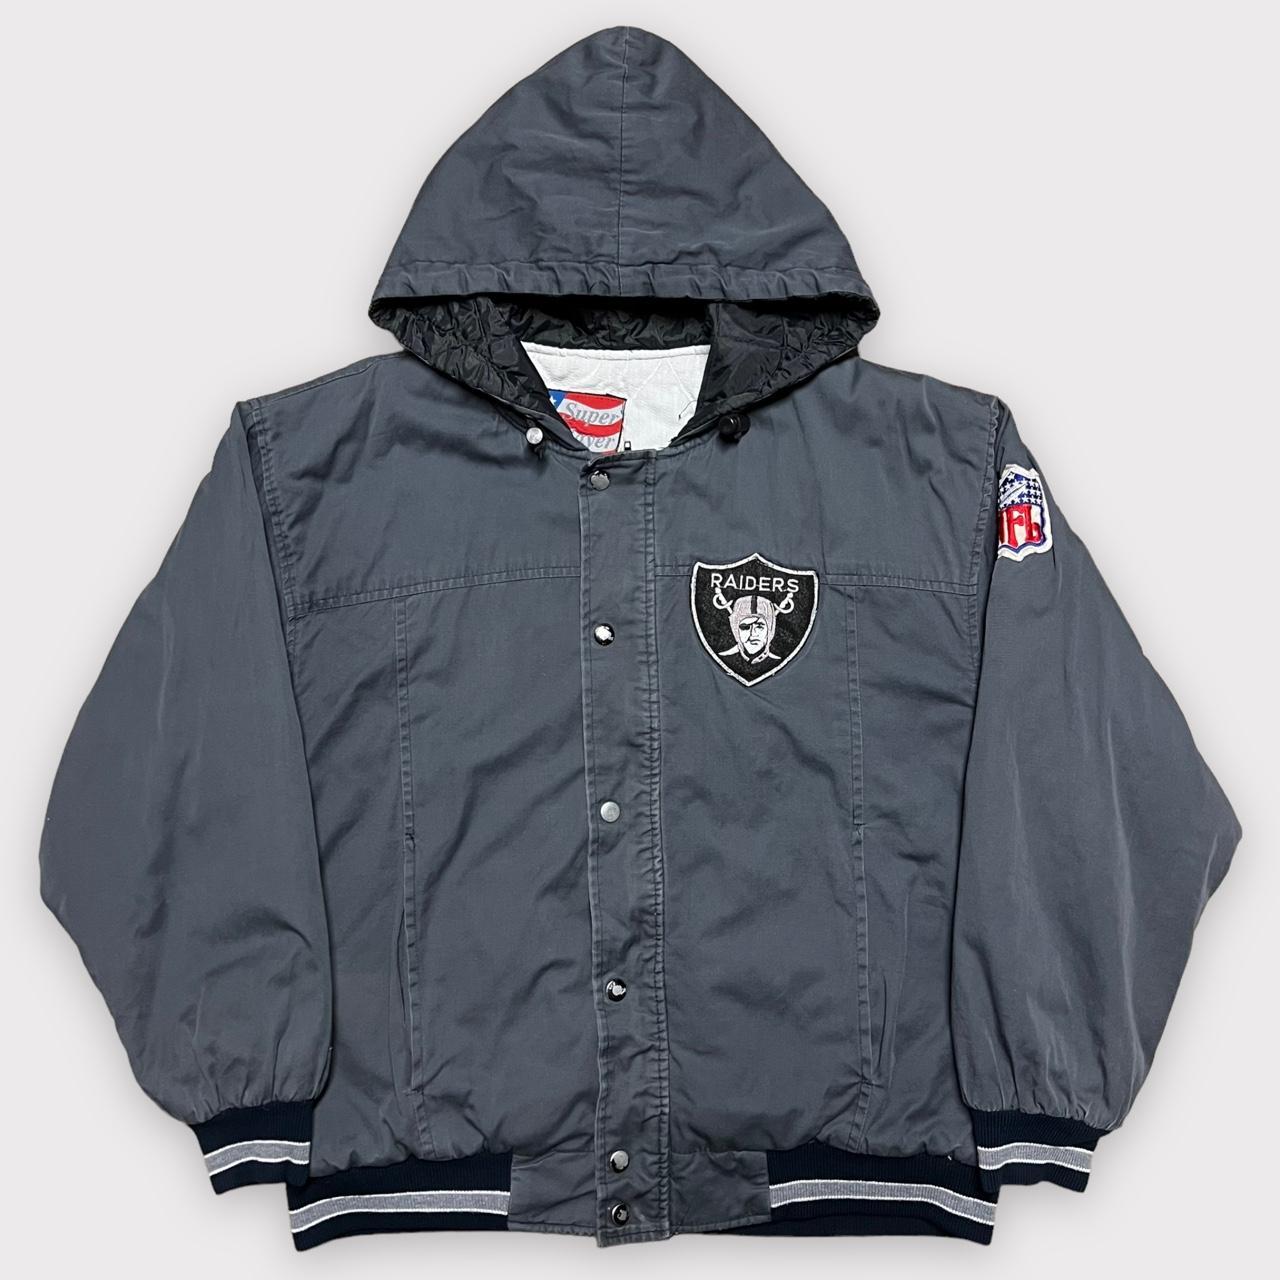 Vintage 90s Raiders Zip Up Jacket By Super Player. - Depop